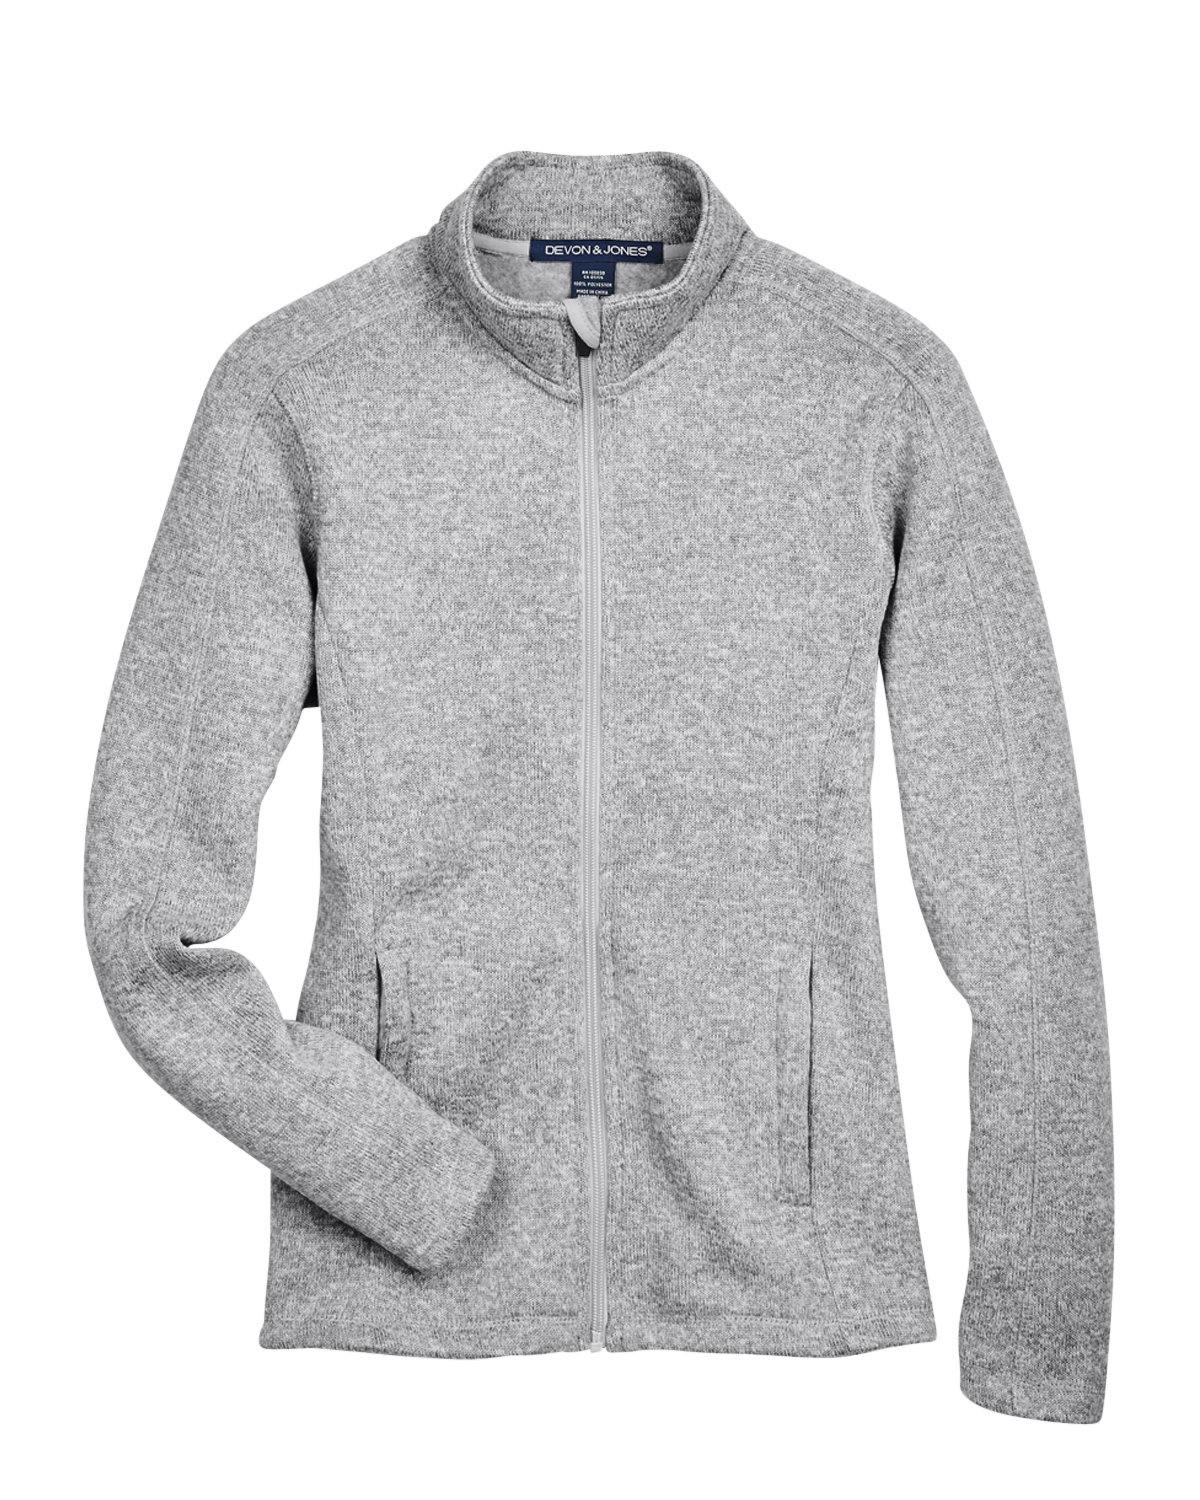 Image for Ladies' Bristol Full-Zip Sweater Fleece Jacket